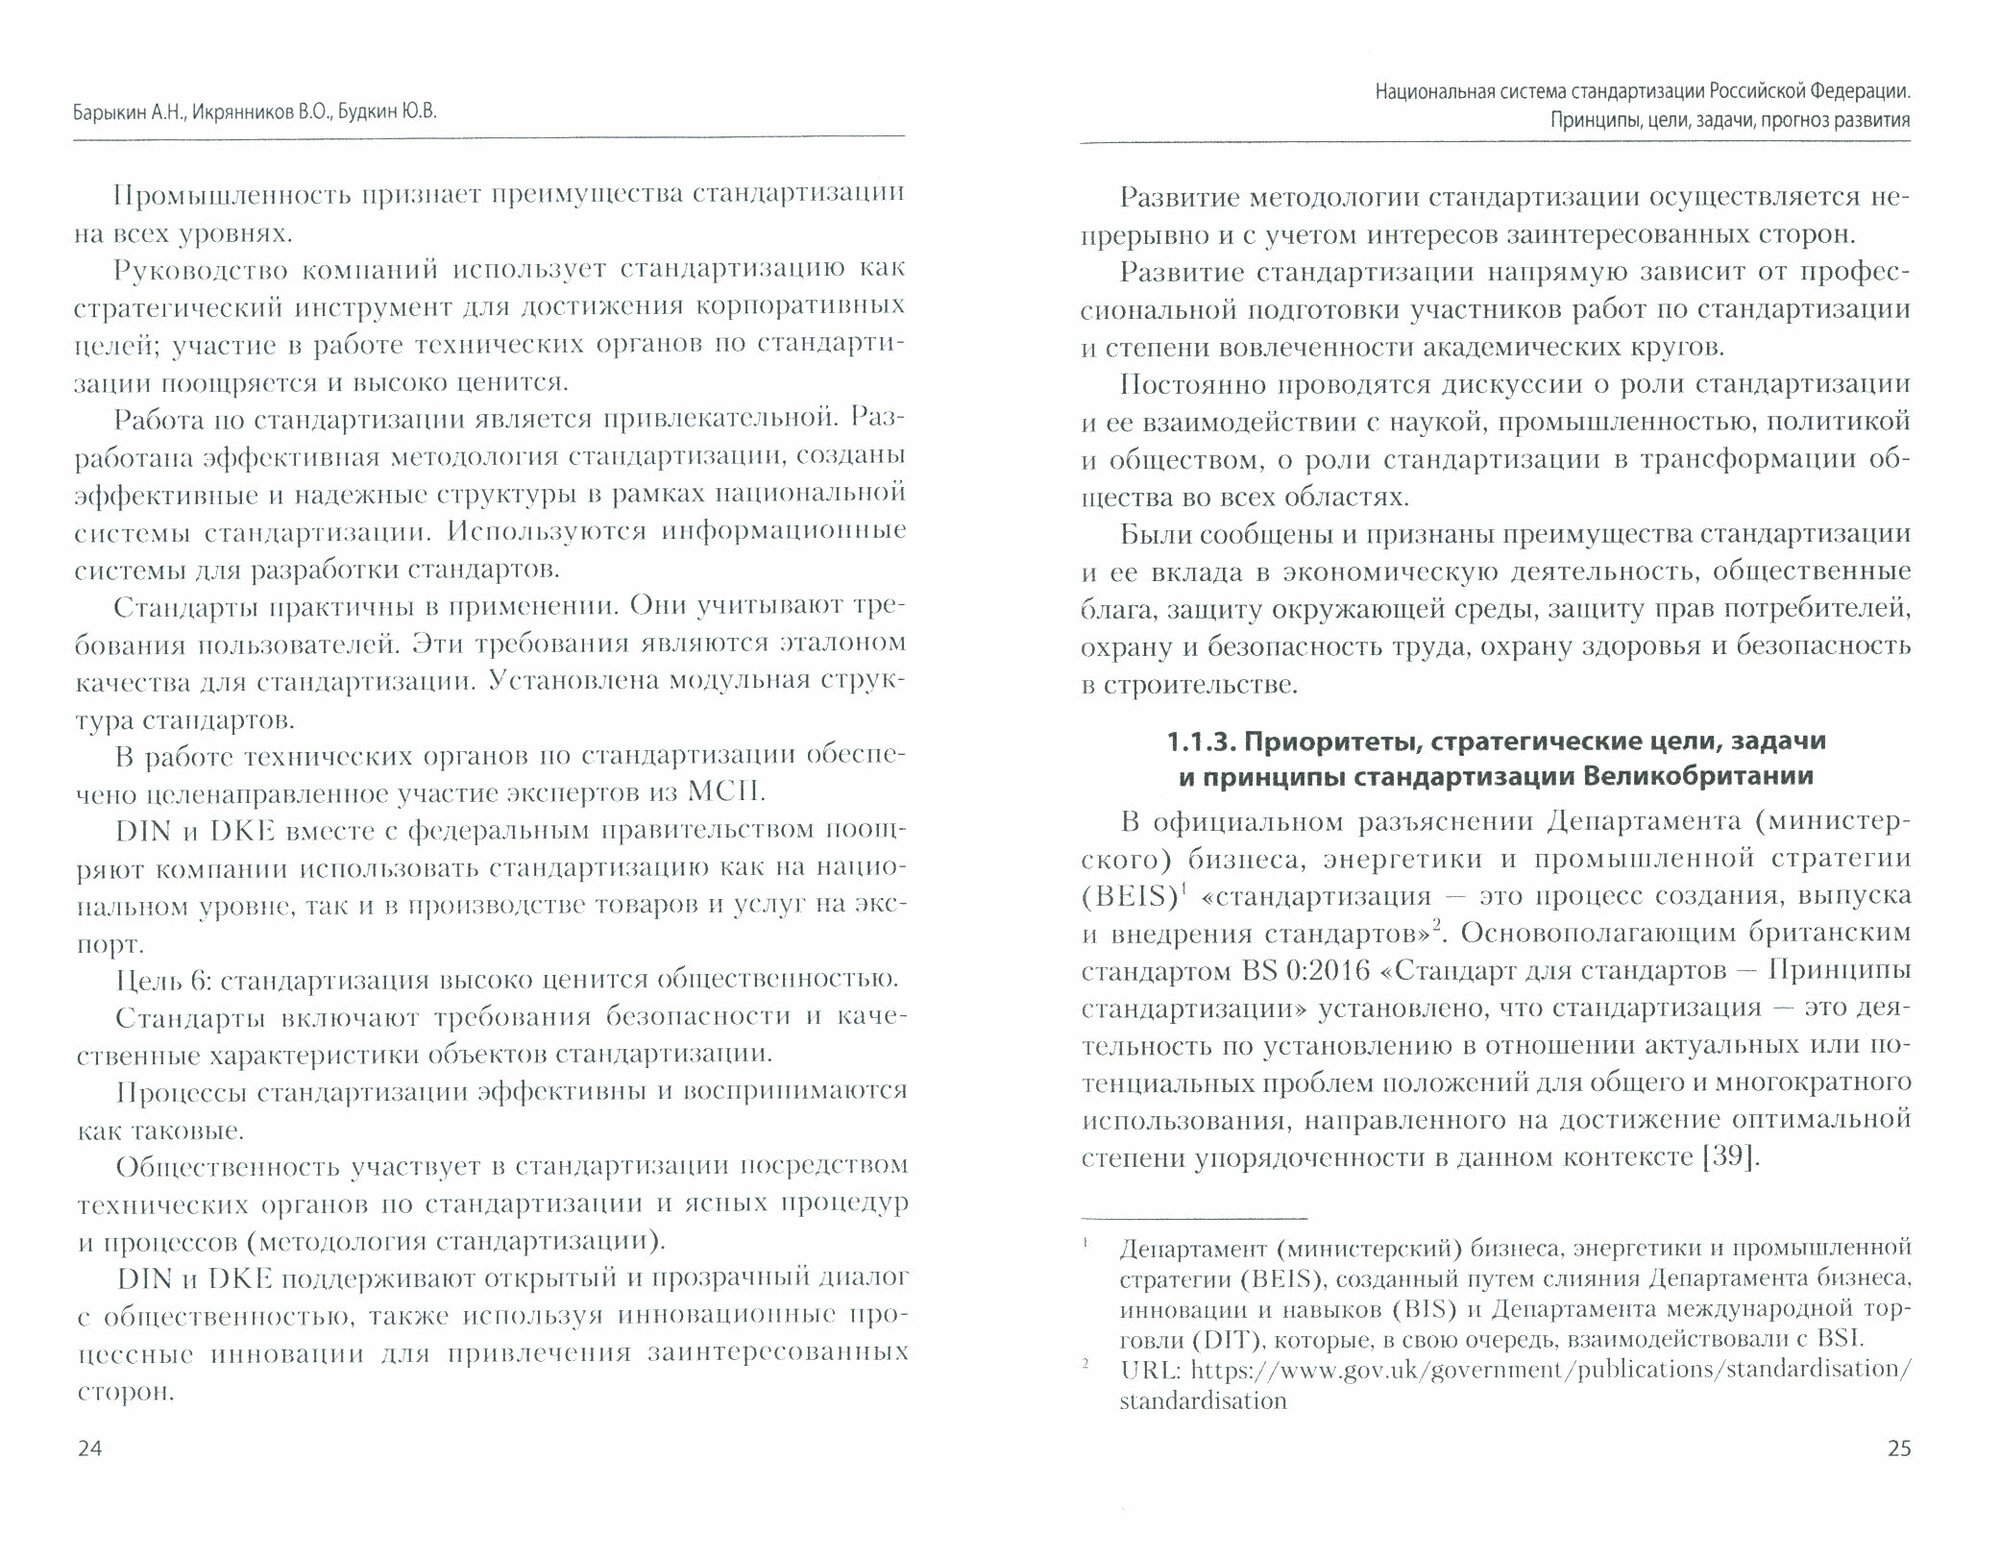 Национальная система стандартизации РФ. Принципы, цели, задачи, прогноз развития. Монография - фото №2